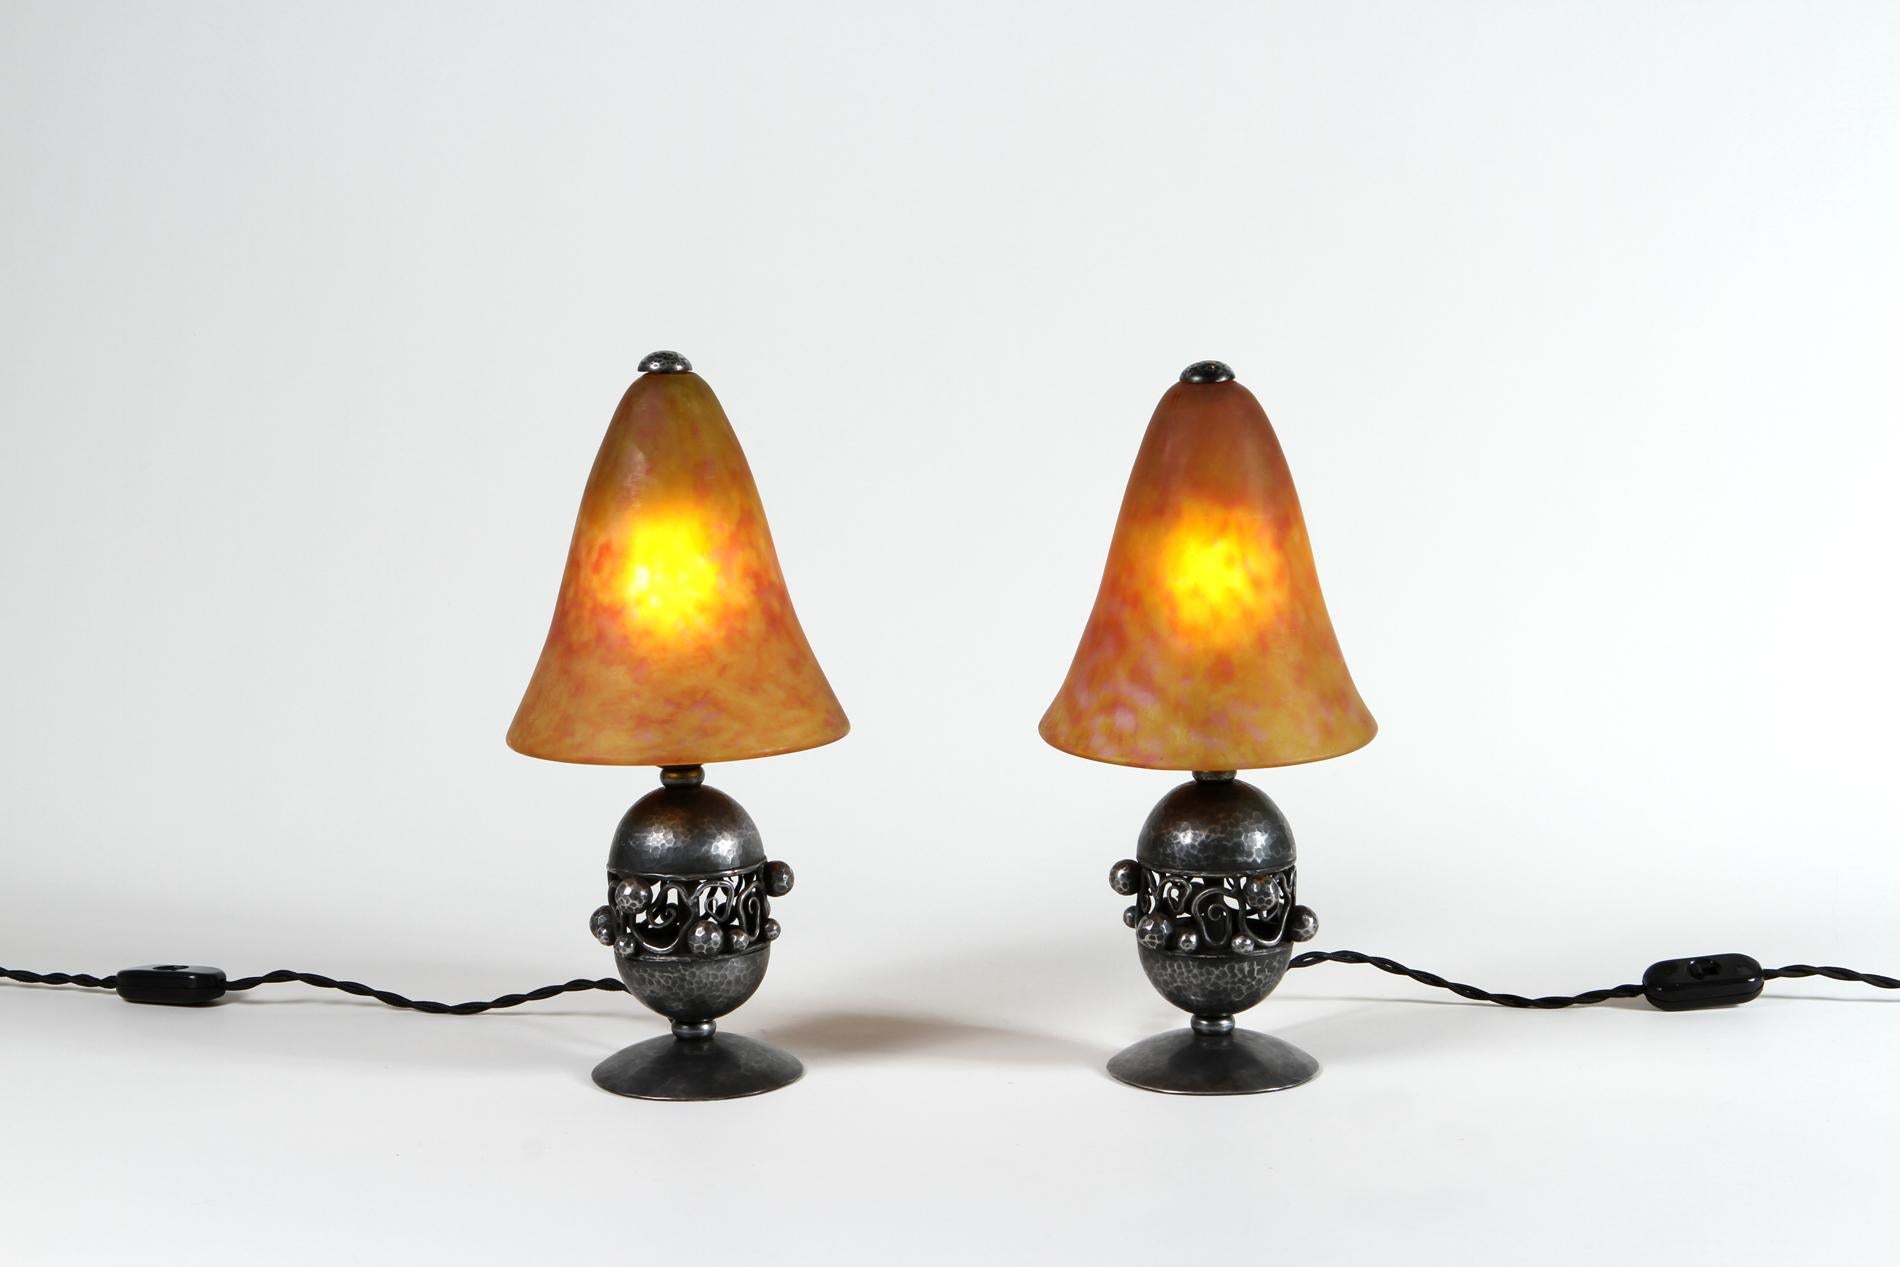 Original französische Art deco kleine Tischlampen  aus Schmiedeeisen und Glas, hergestellt von Edgar Brandt und Daum. Ikonische Modellkreation zwischen den beiden Künstlern mit Unterschrift auf dem Sockel. 